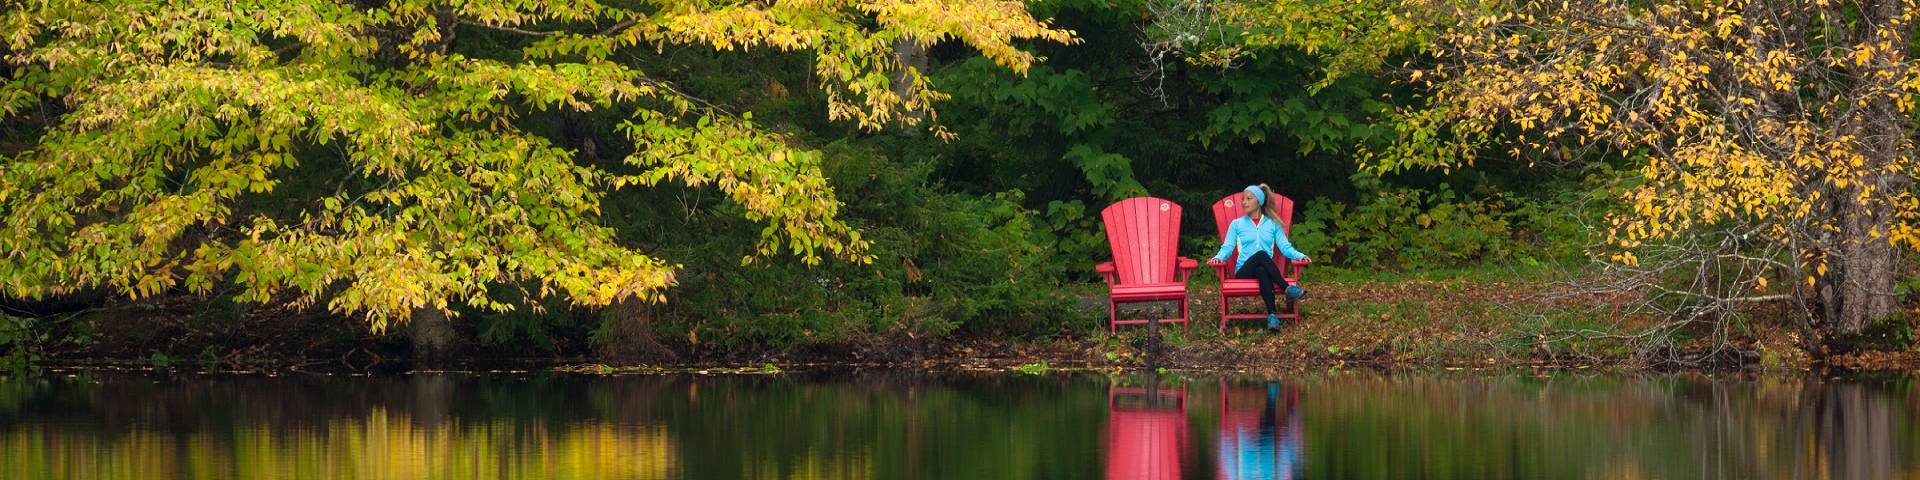 Une personne assise dans une chaise rouge tout près d'un lac